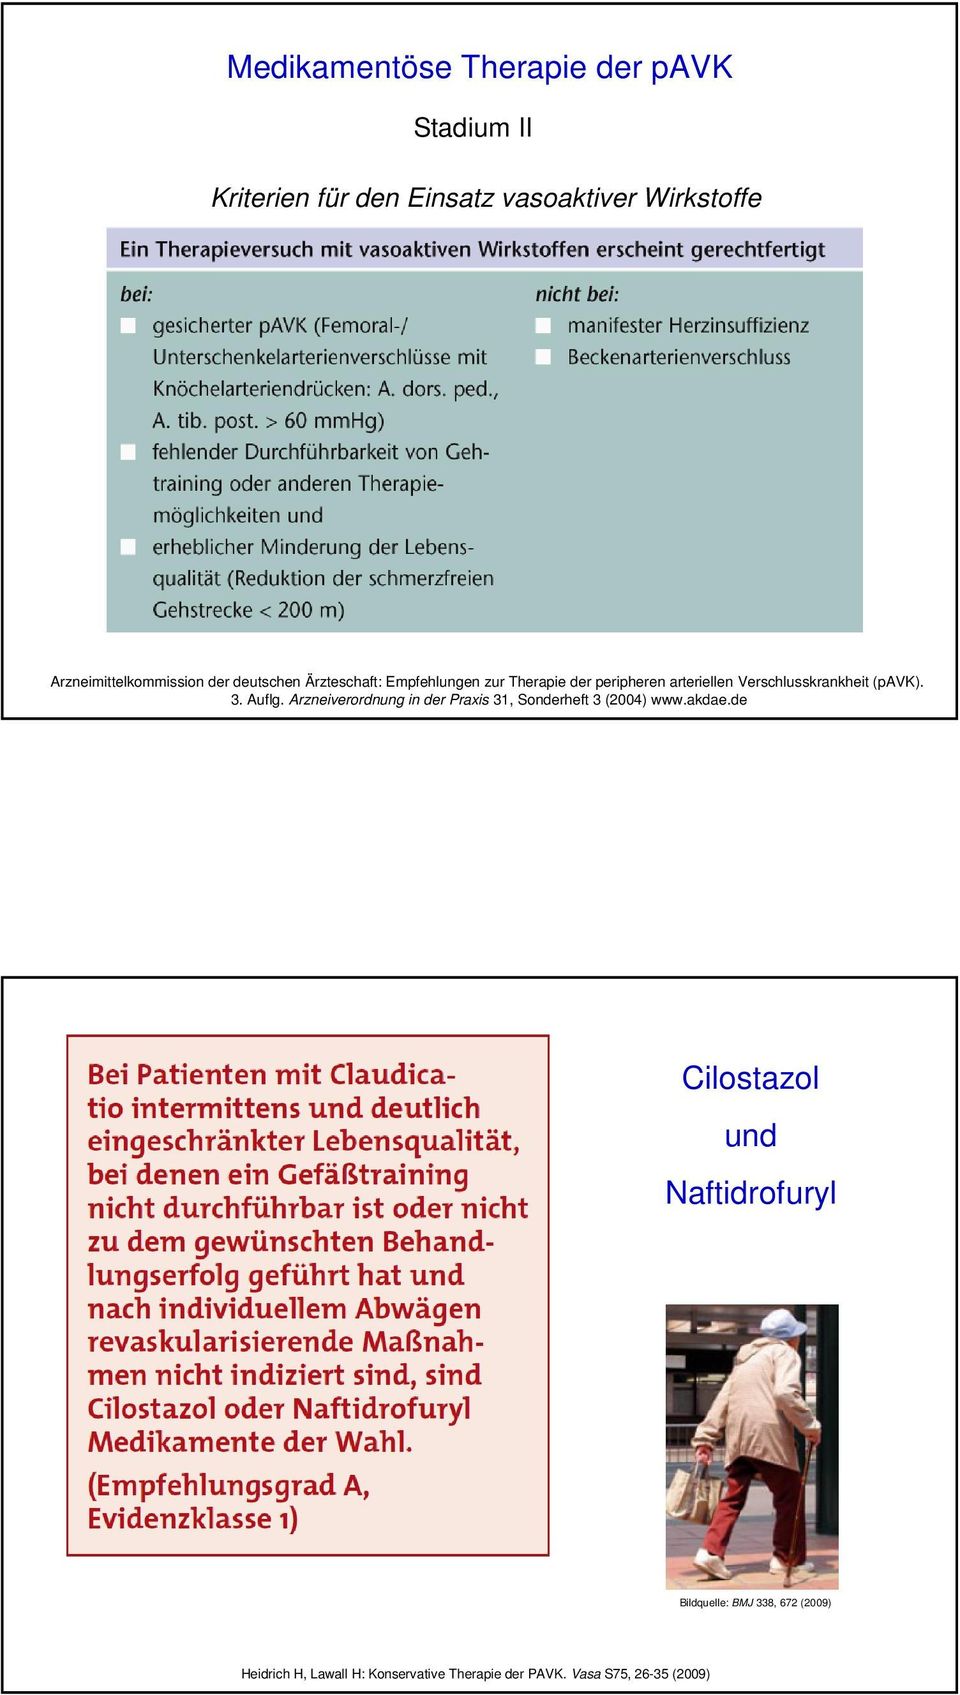 Verschlusskrankheit (pavk). 3. Auflg. Arzneiverordnung in der Praxis 31, Sonderheft 3 (2004) www.akdae.